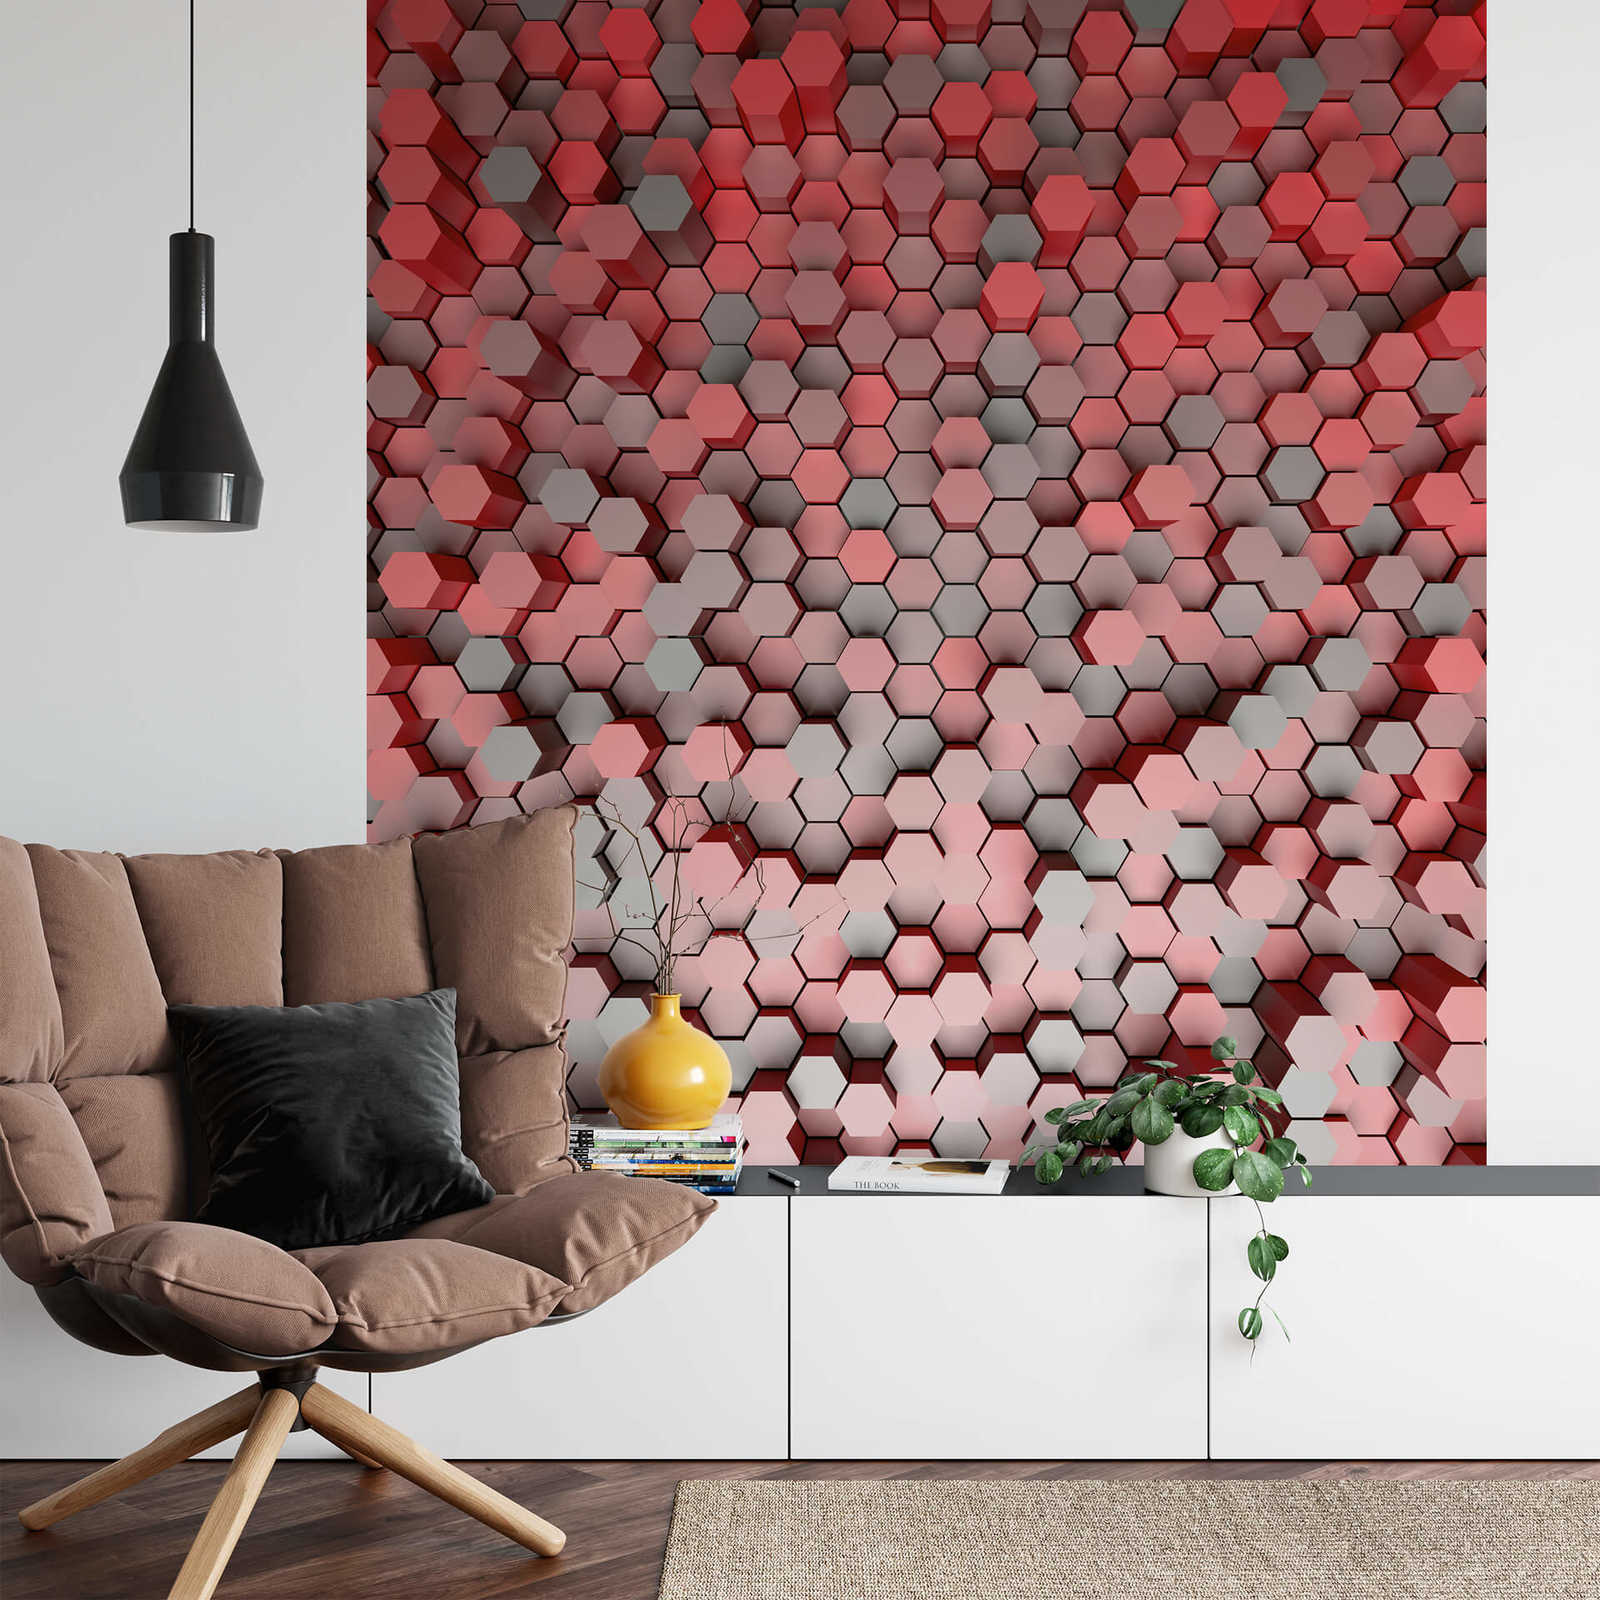             Papier peint 3D Hexagon Graphic Design - rouge, gris
        